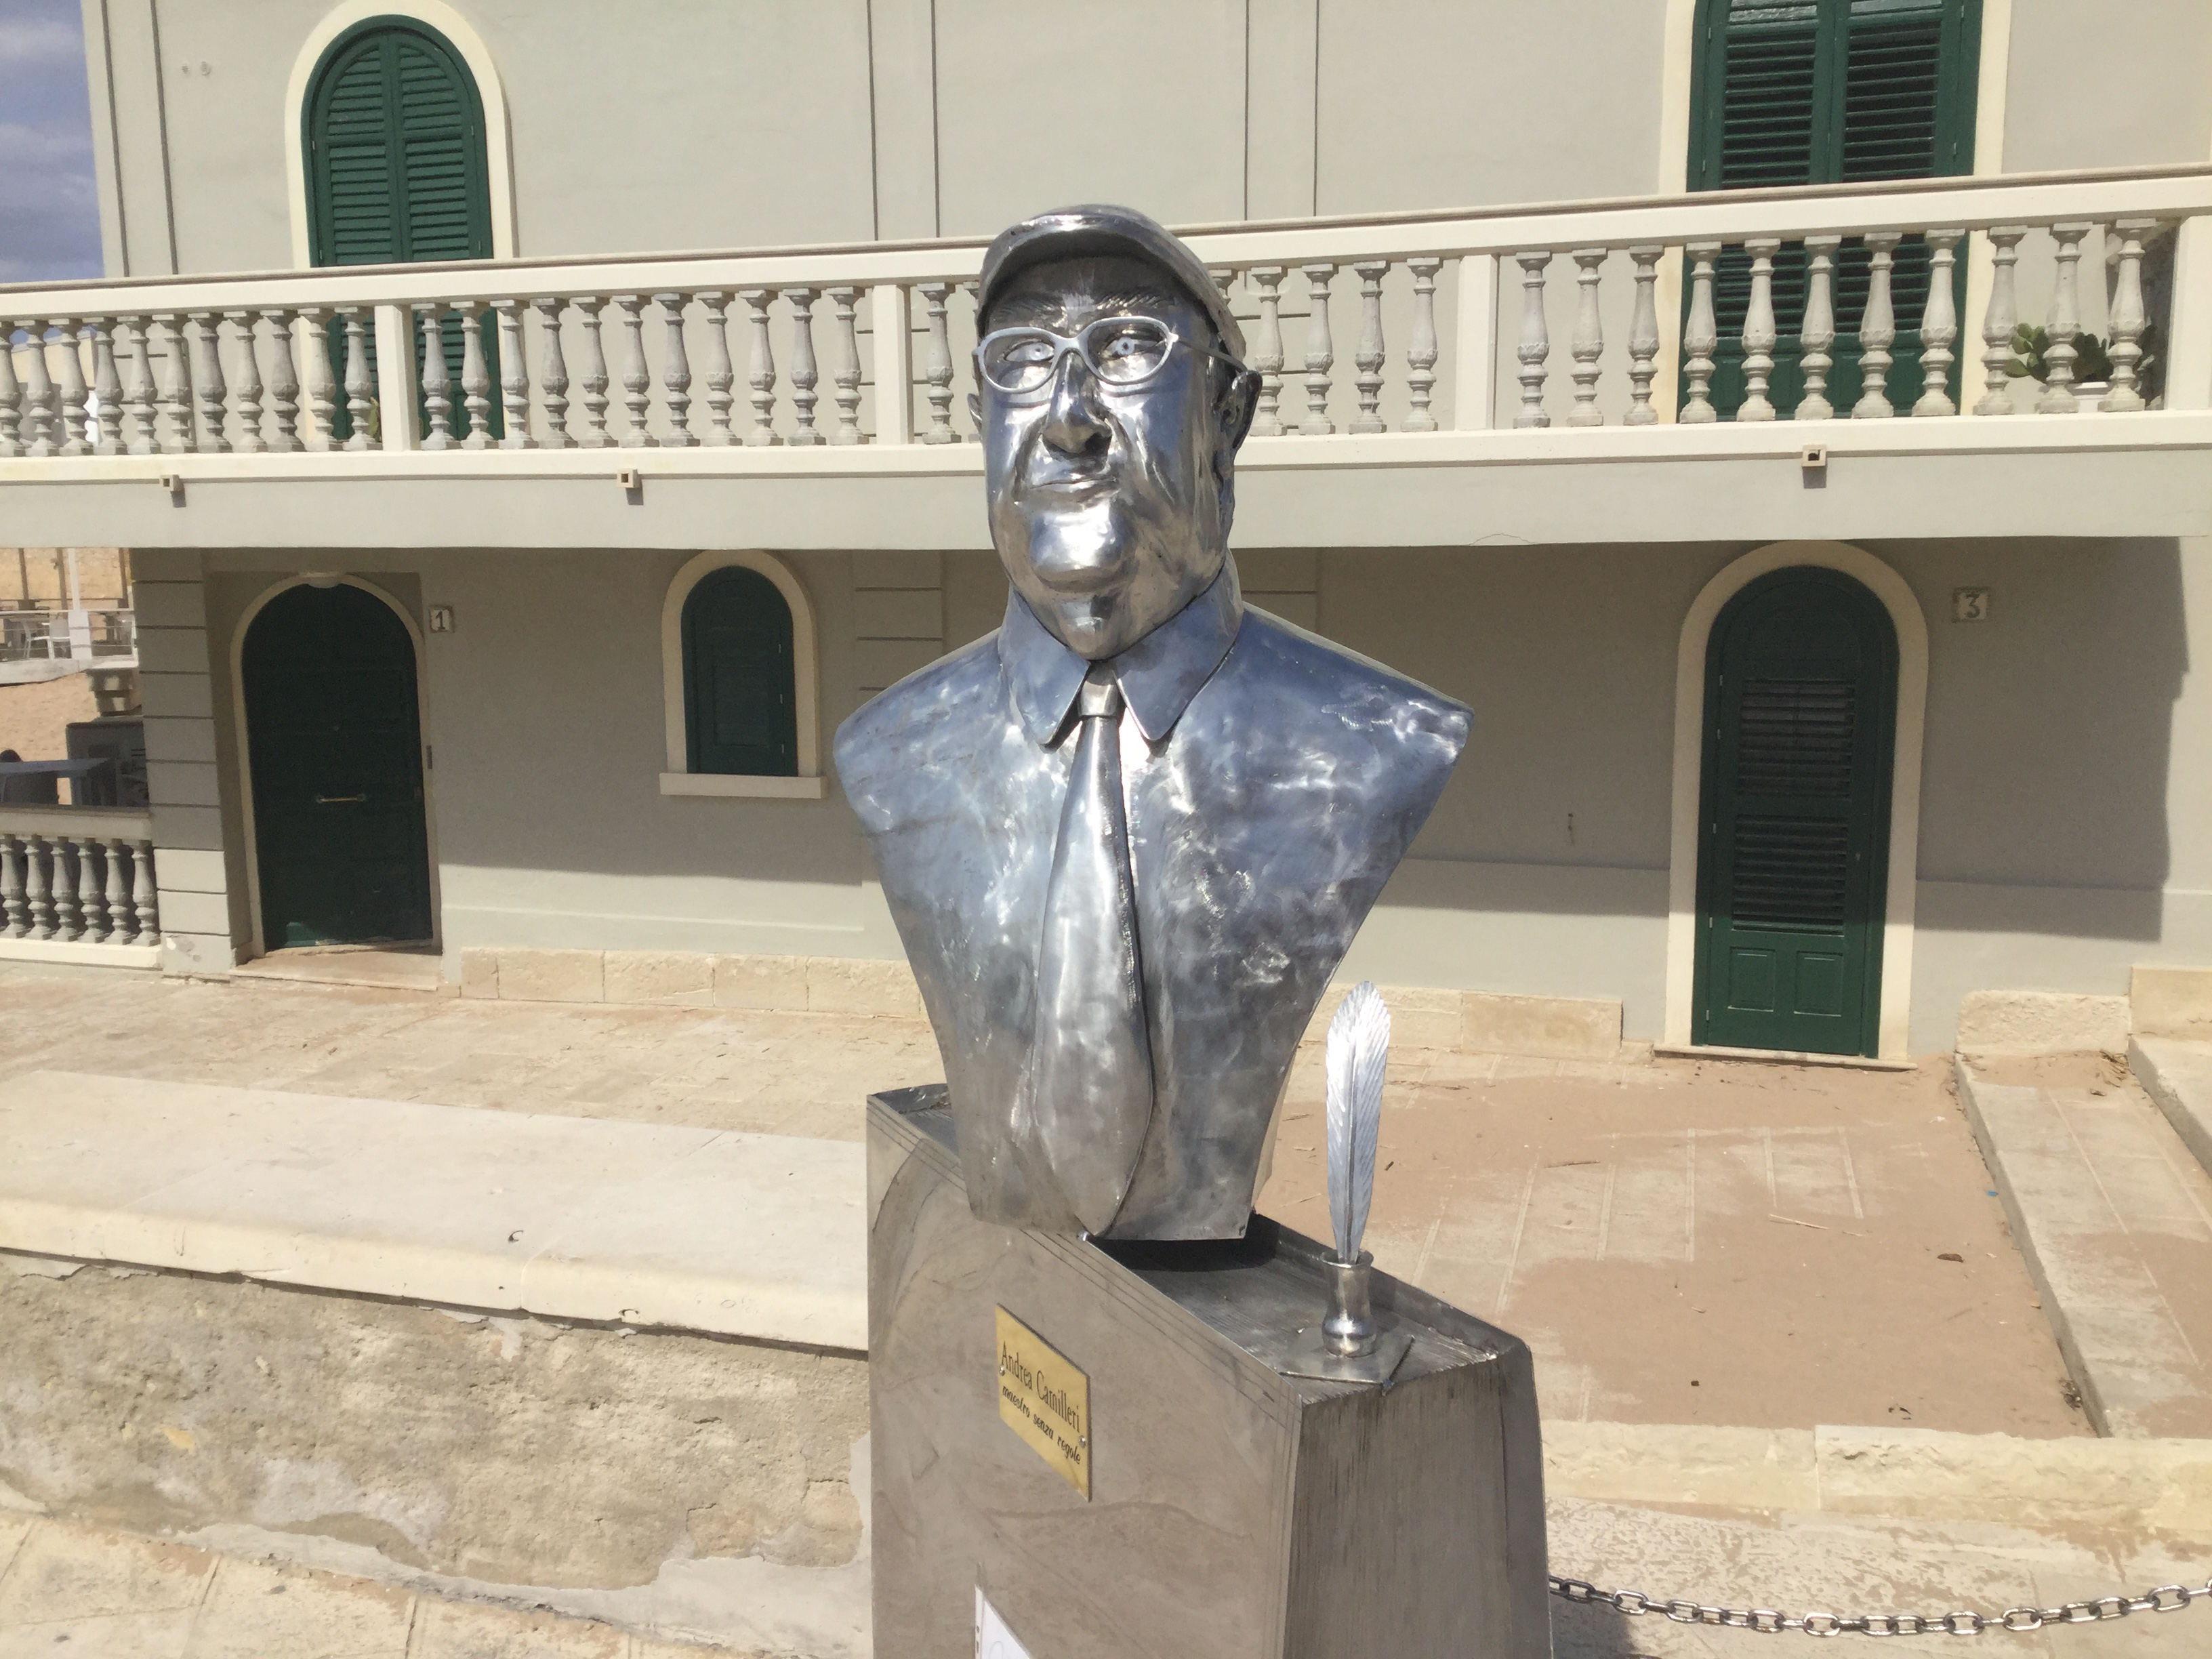  La statua di Camilleri è “abusiva”: il maestro Barone cacciato da piazza Torre